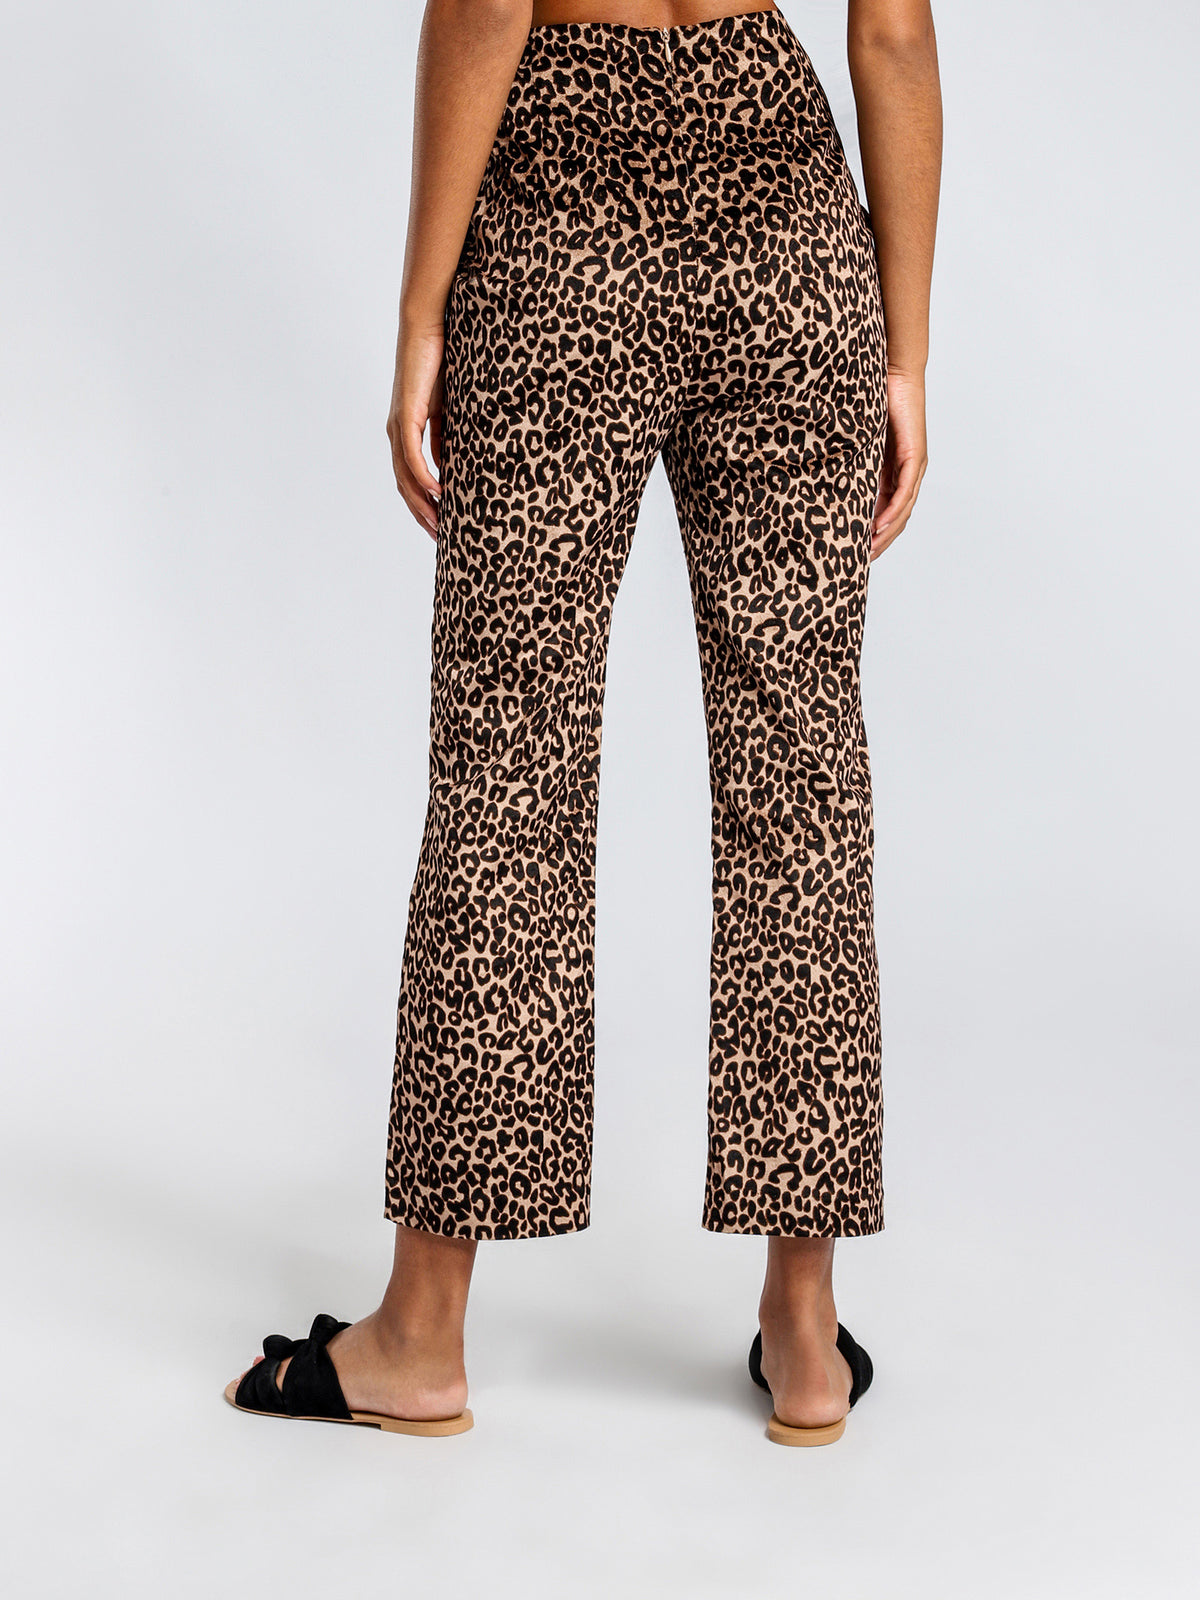 Sloan Pants in Leopard Print